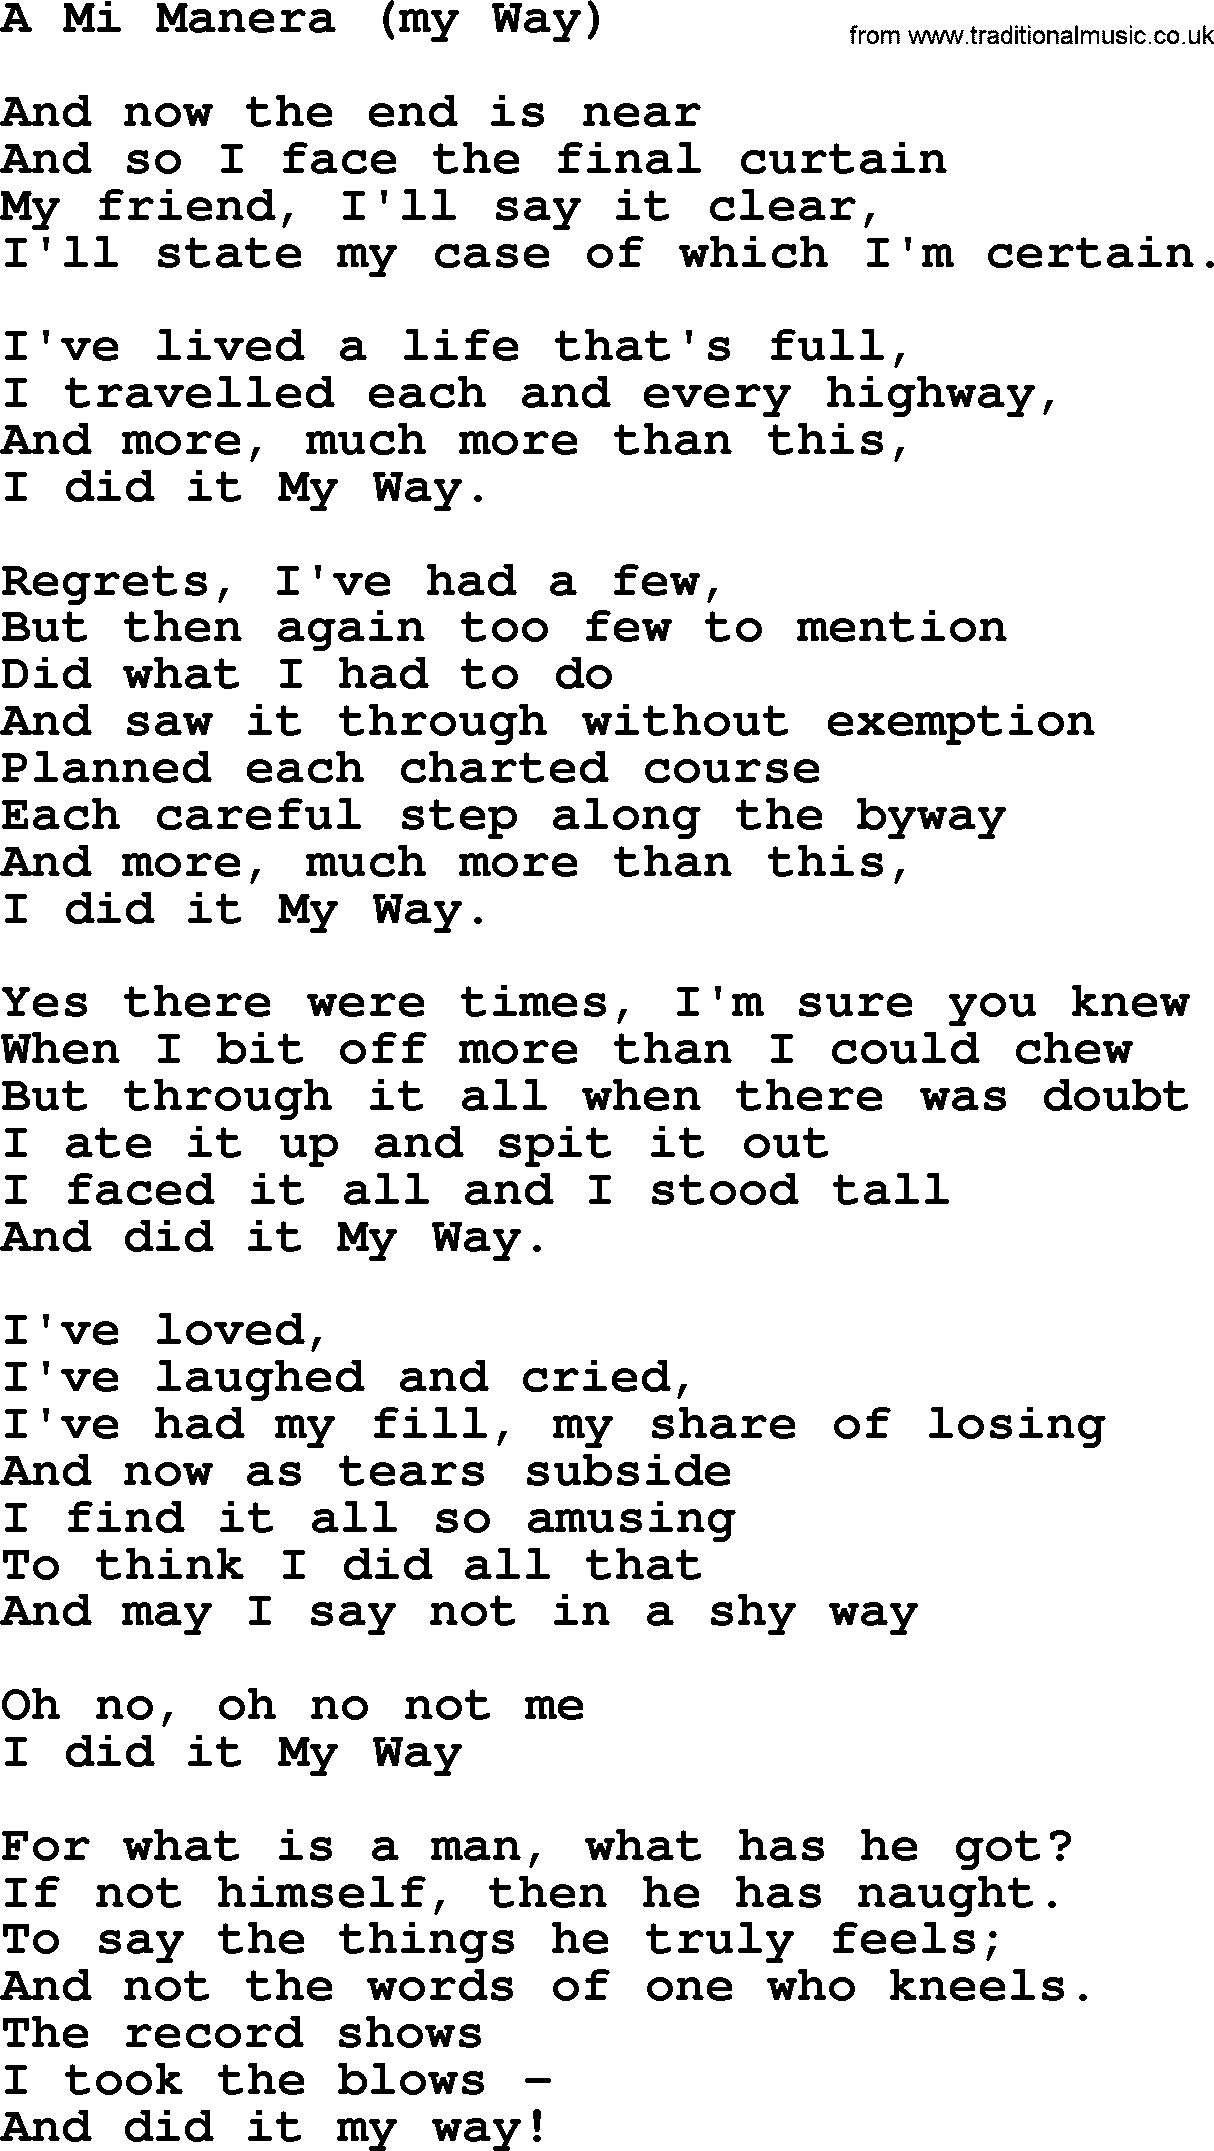 Joan Baez song A Mi Manera(My Way), lyrics